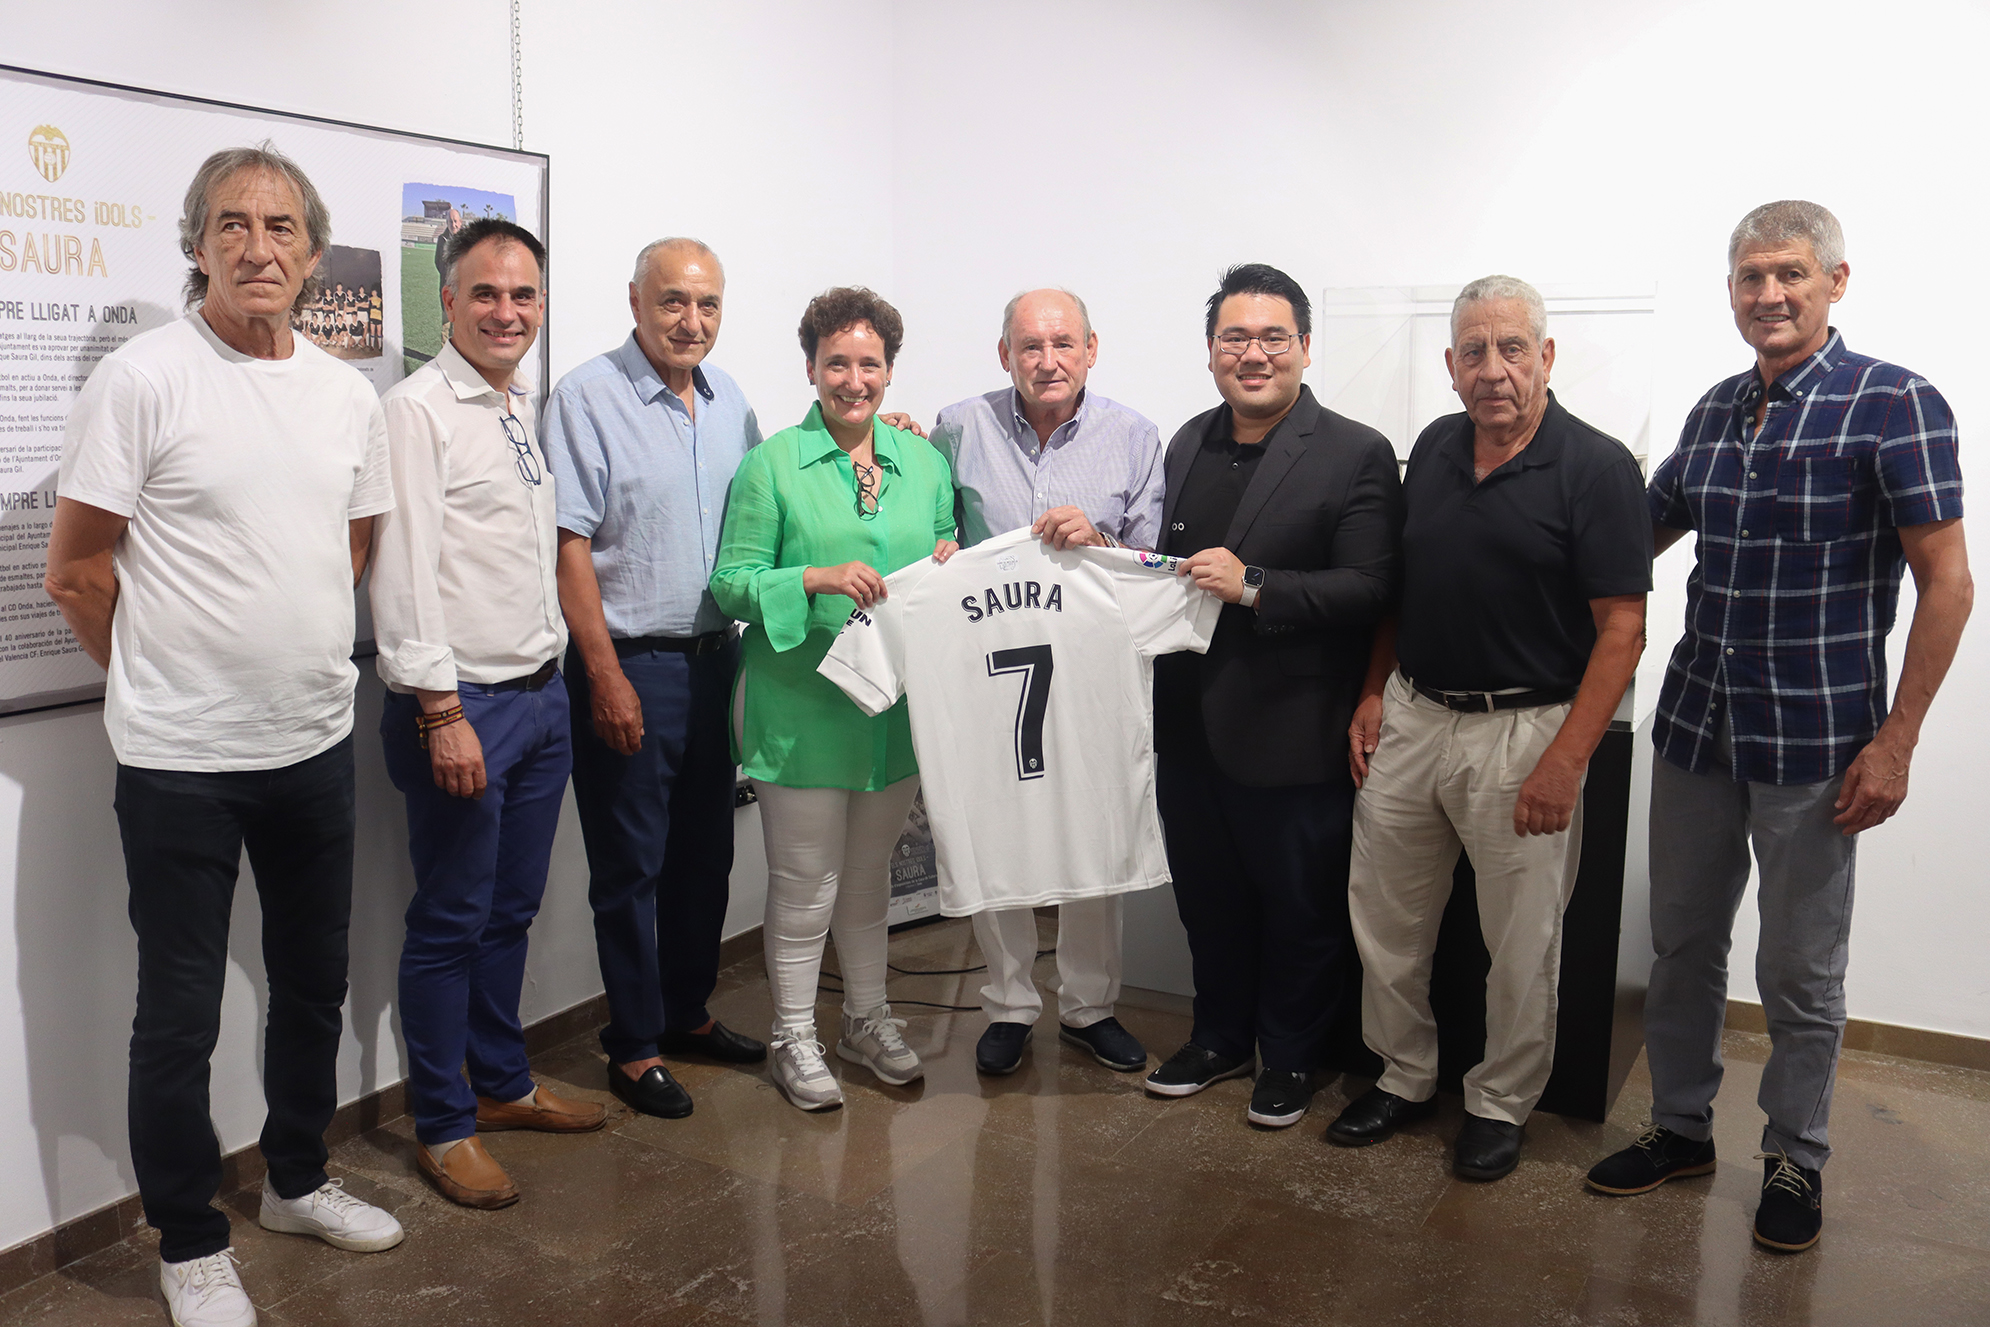 El mítico futbolista Enrique Saura recibe un homenaje con la exposición que repasa su vida y excelente carrera deportiva